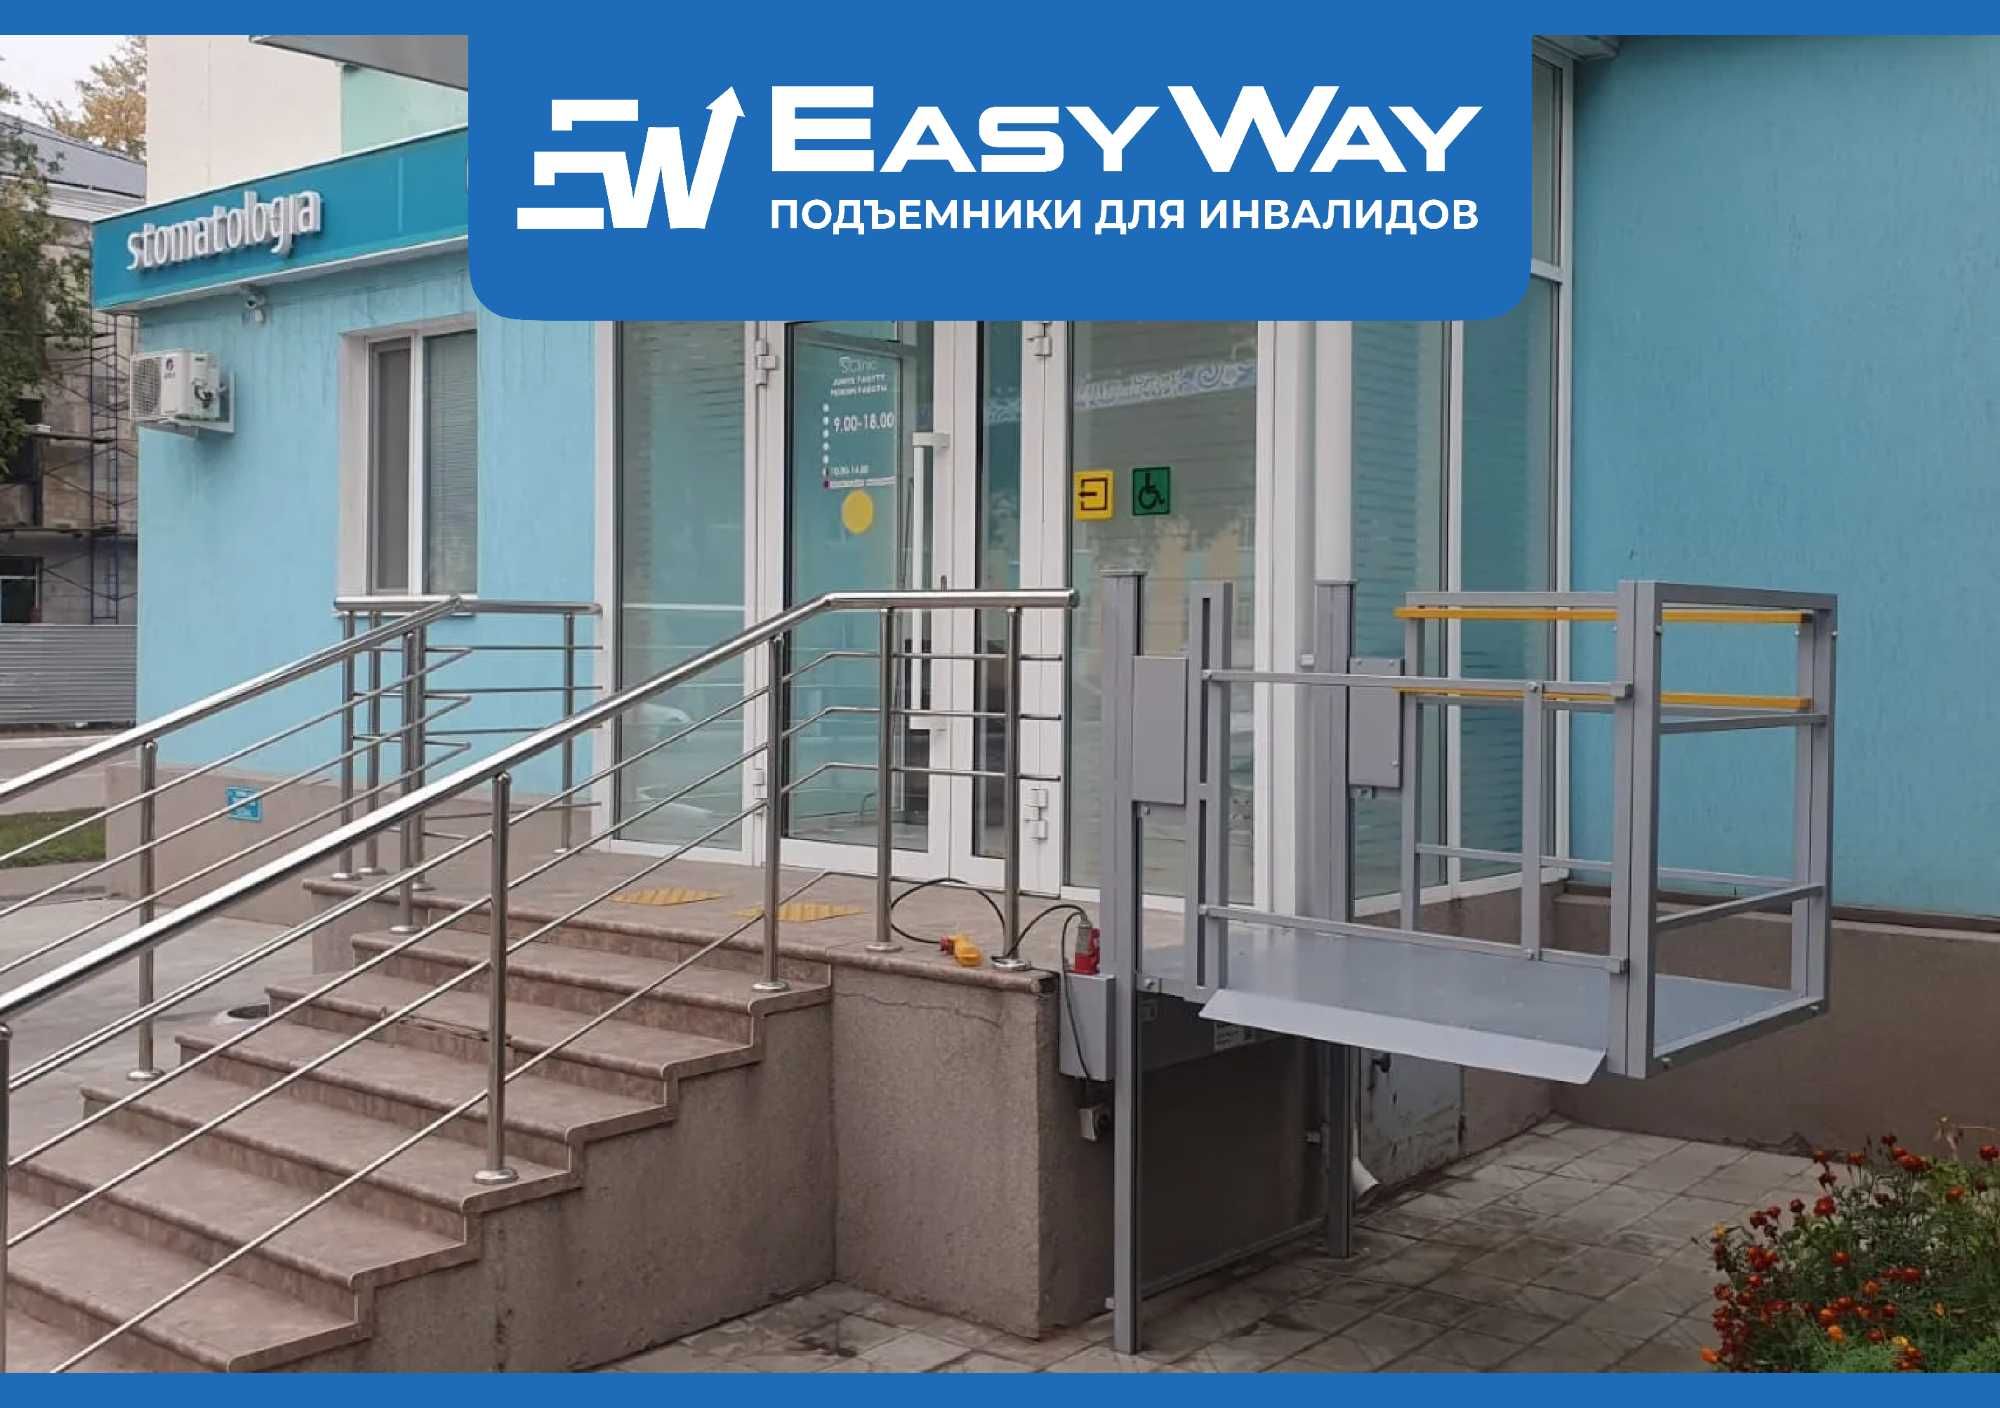 EasyWay: Вертикальные подъемники для инвалидов (г. Астана)